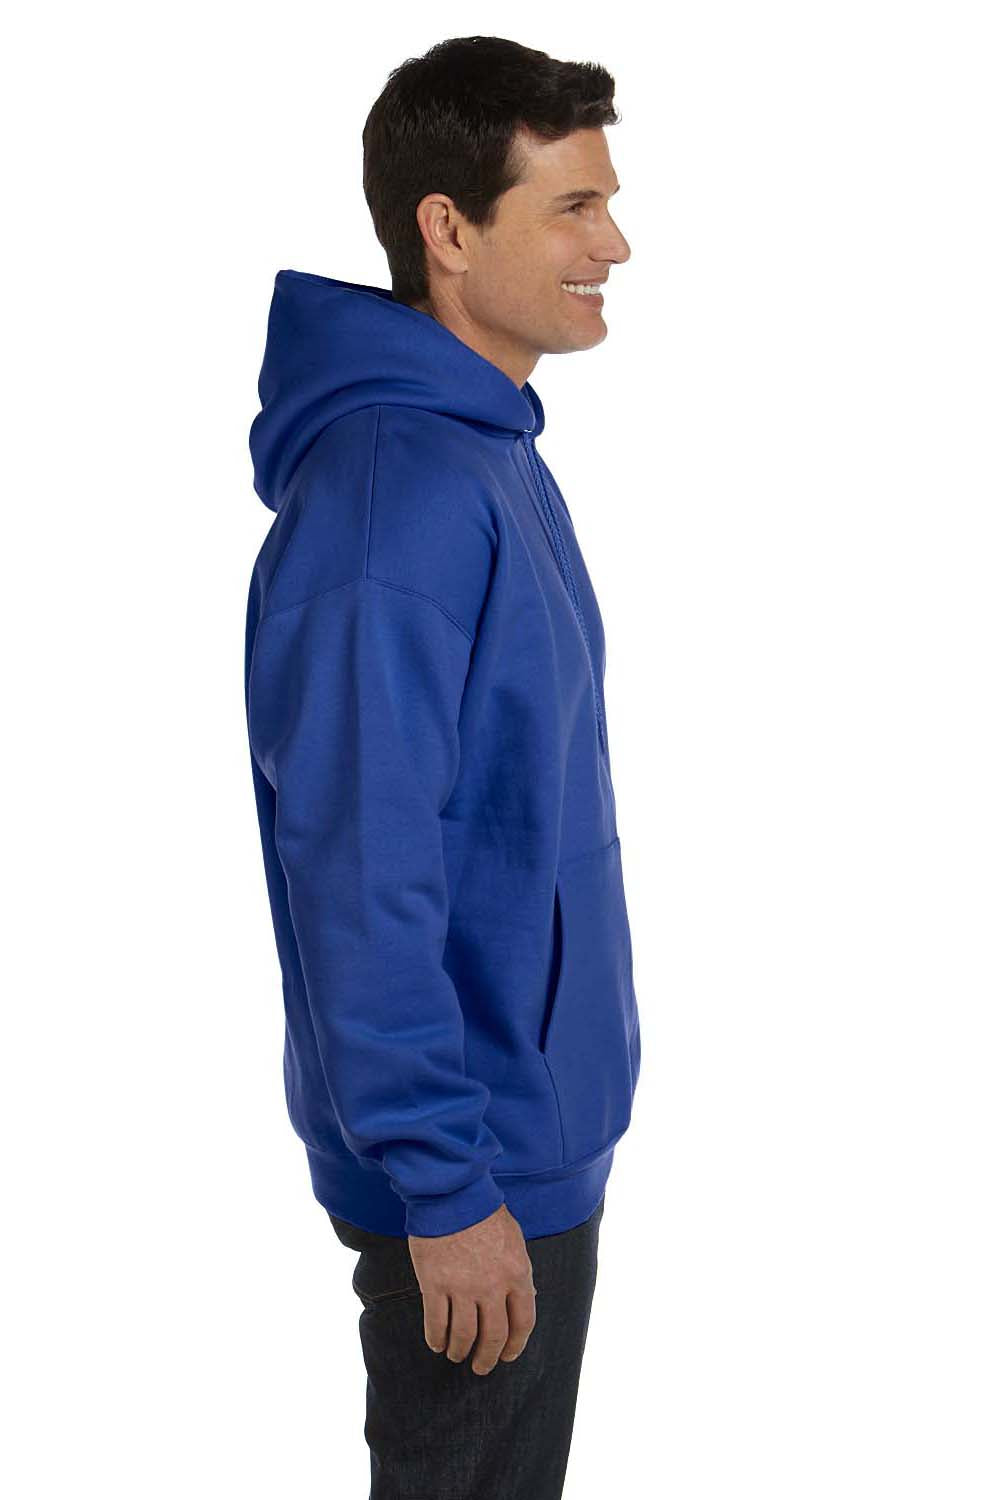 Hanes F170 Mens Ultimate Cotton PrintPro XP Hooded Sweatshirt Hoodie Royal Blue Side